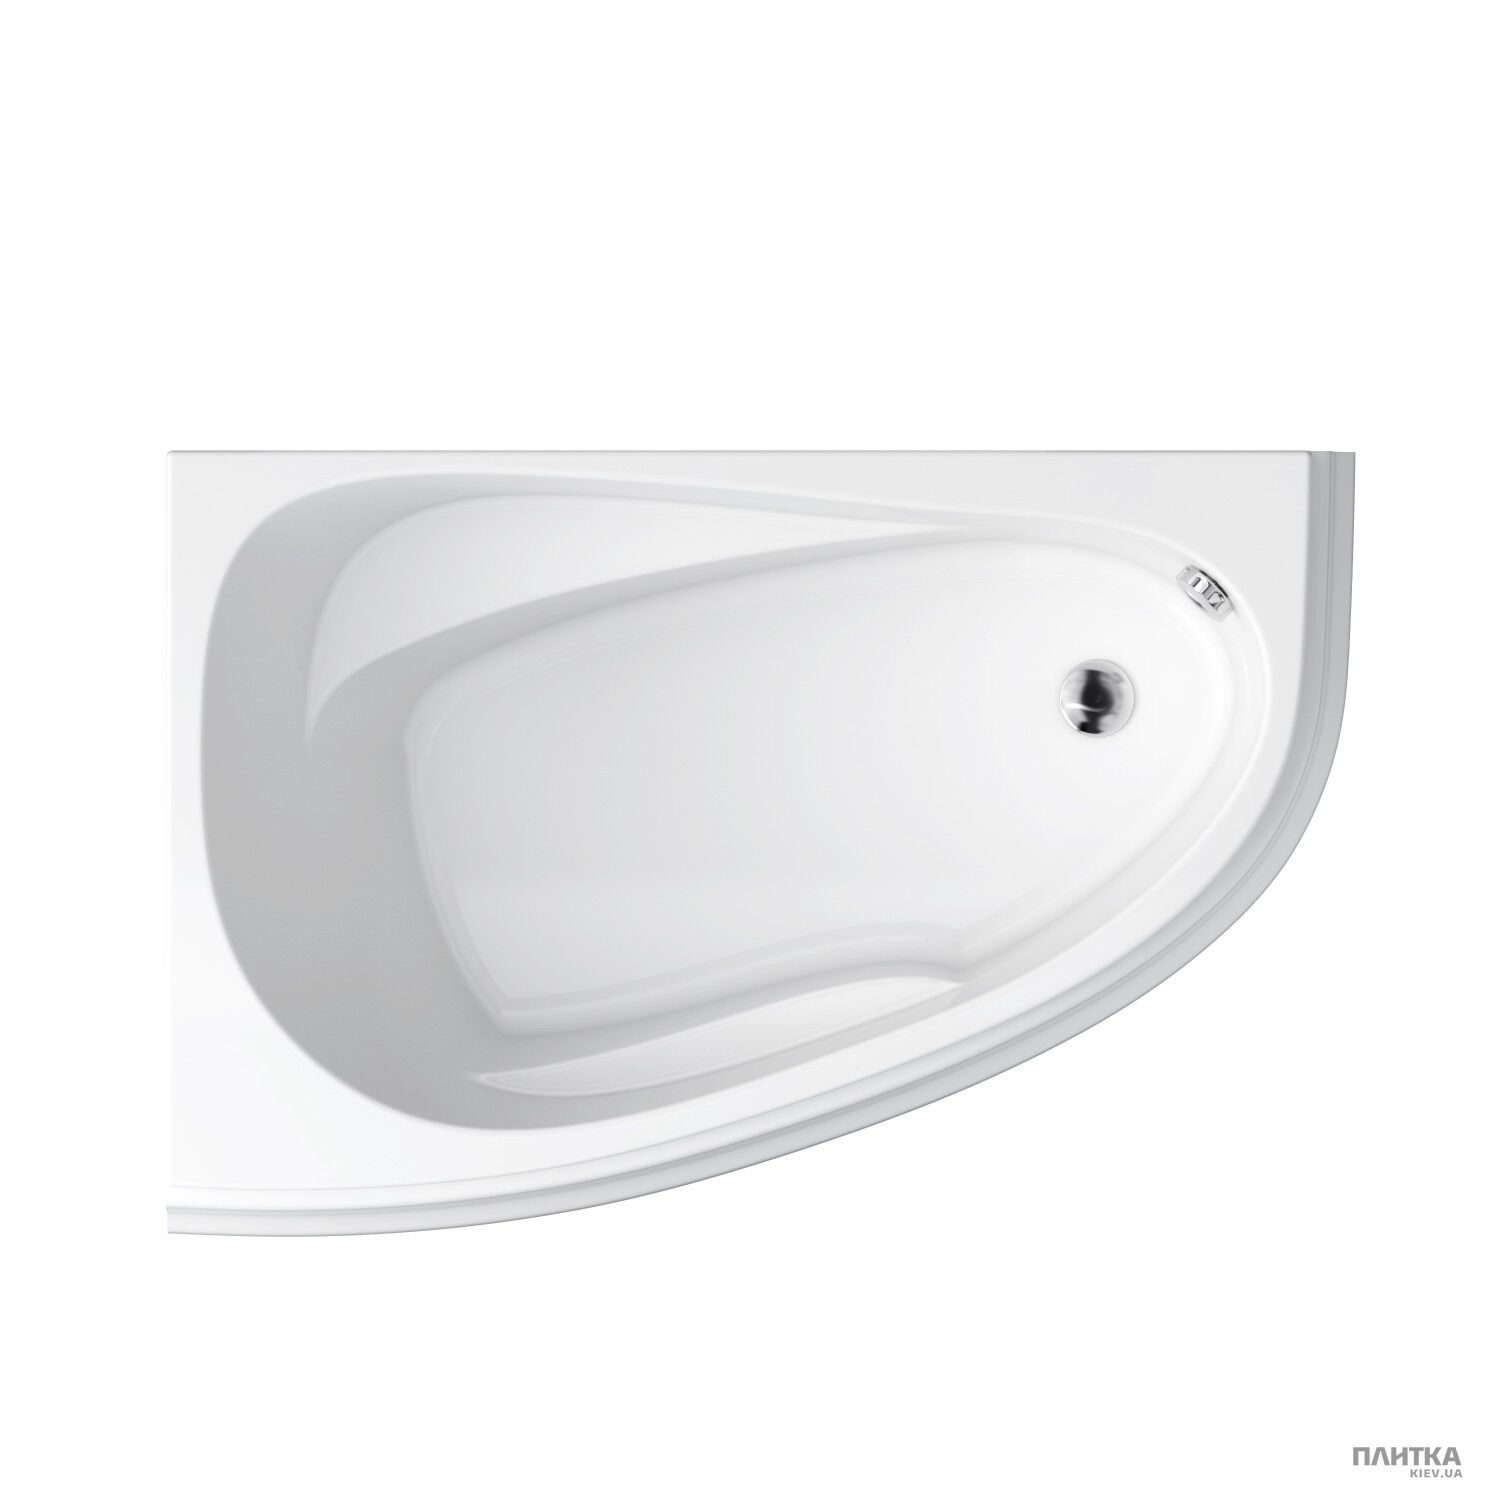 Акриловая ванна Cersanit Joanna New 140x90 см левая, асимметричная белый